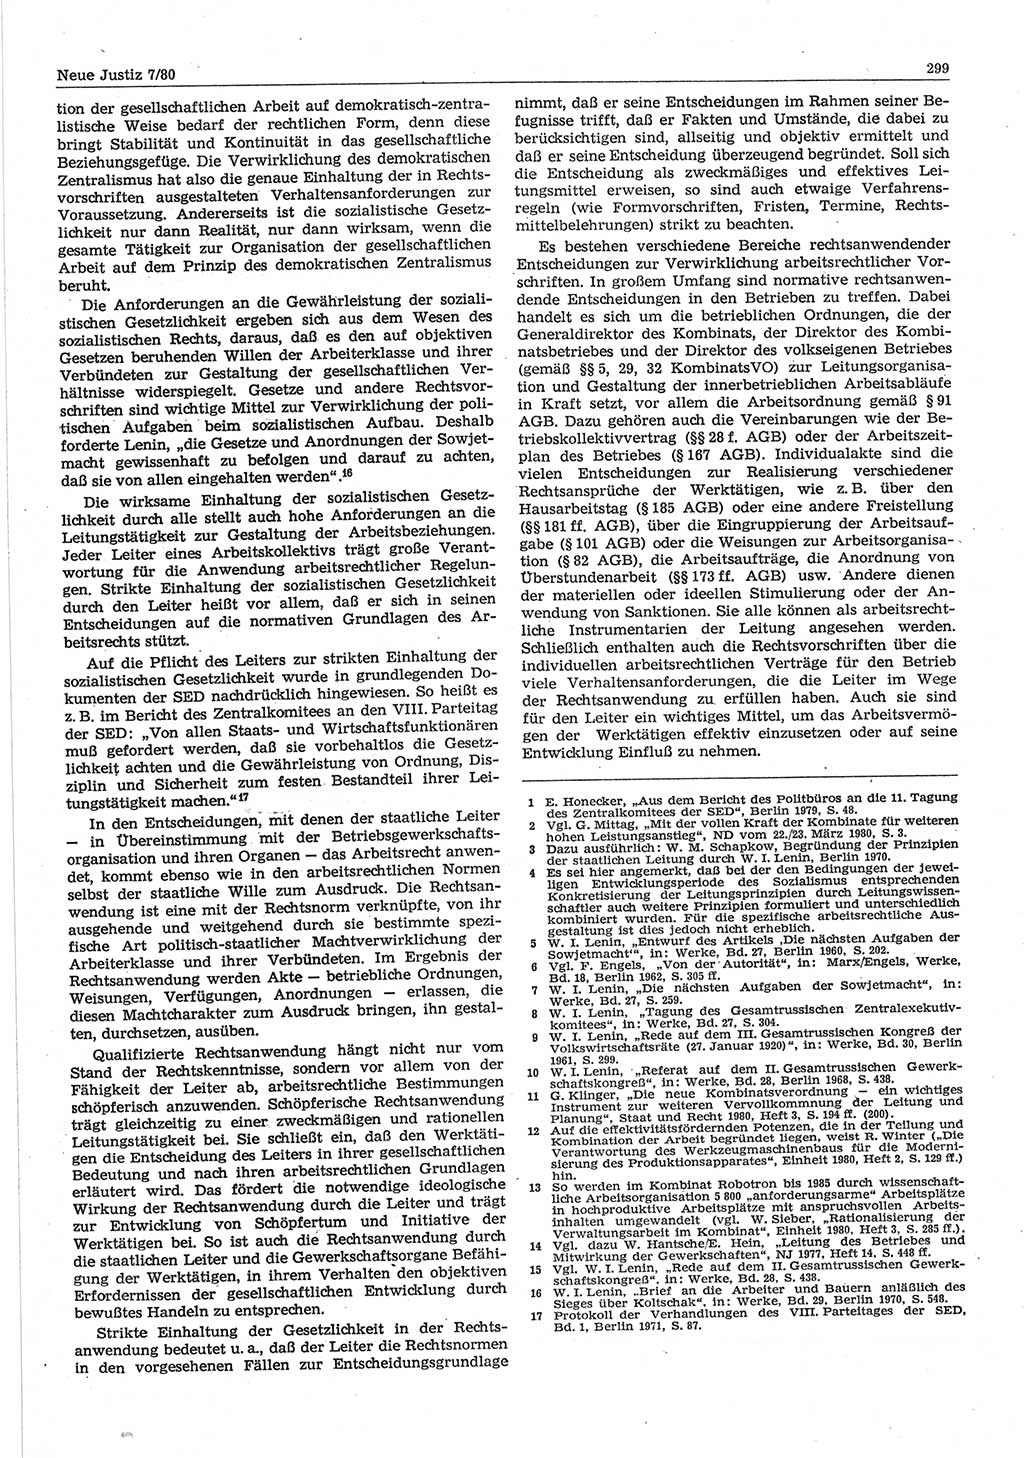 Neue Justiz (NJ), Zeitschrift für sozialistisches Recht und Gesetzlichkeit [Deutsche Demokratische Republik (DDR)], 34. Jahrgang 1980, Seite 299 (NJ DDR 1980, S. 299)